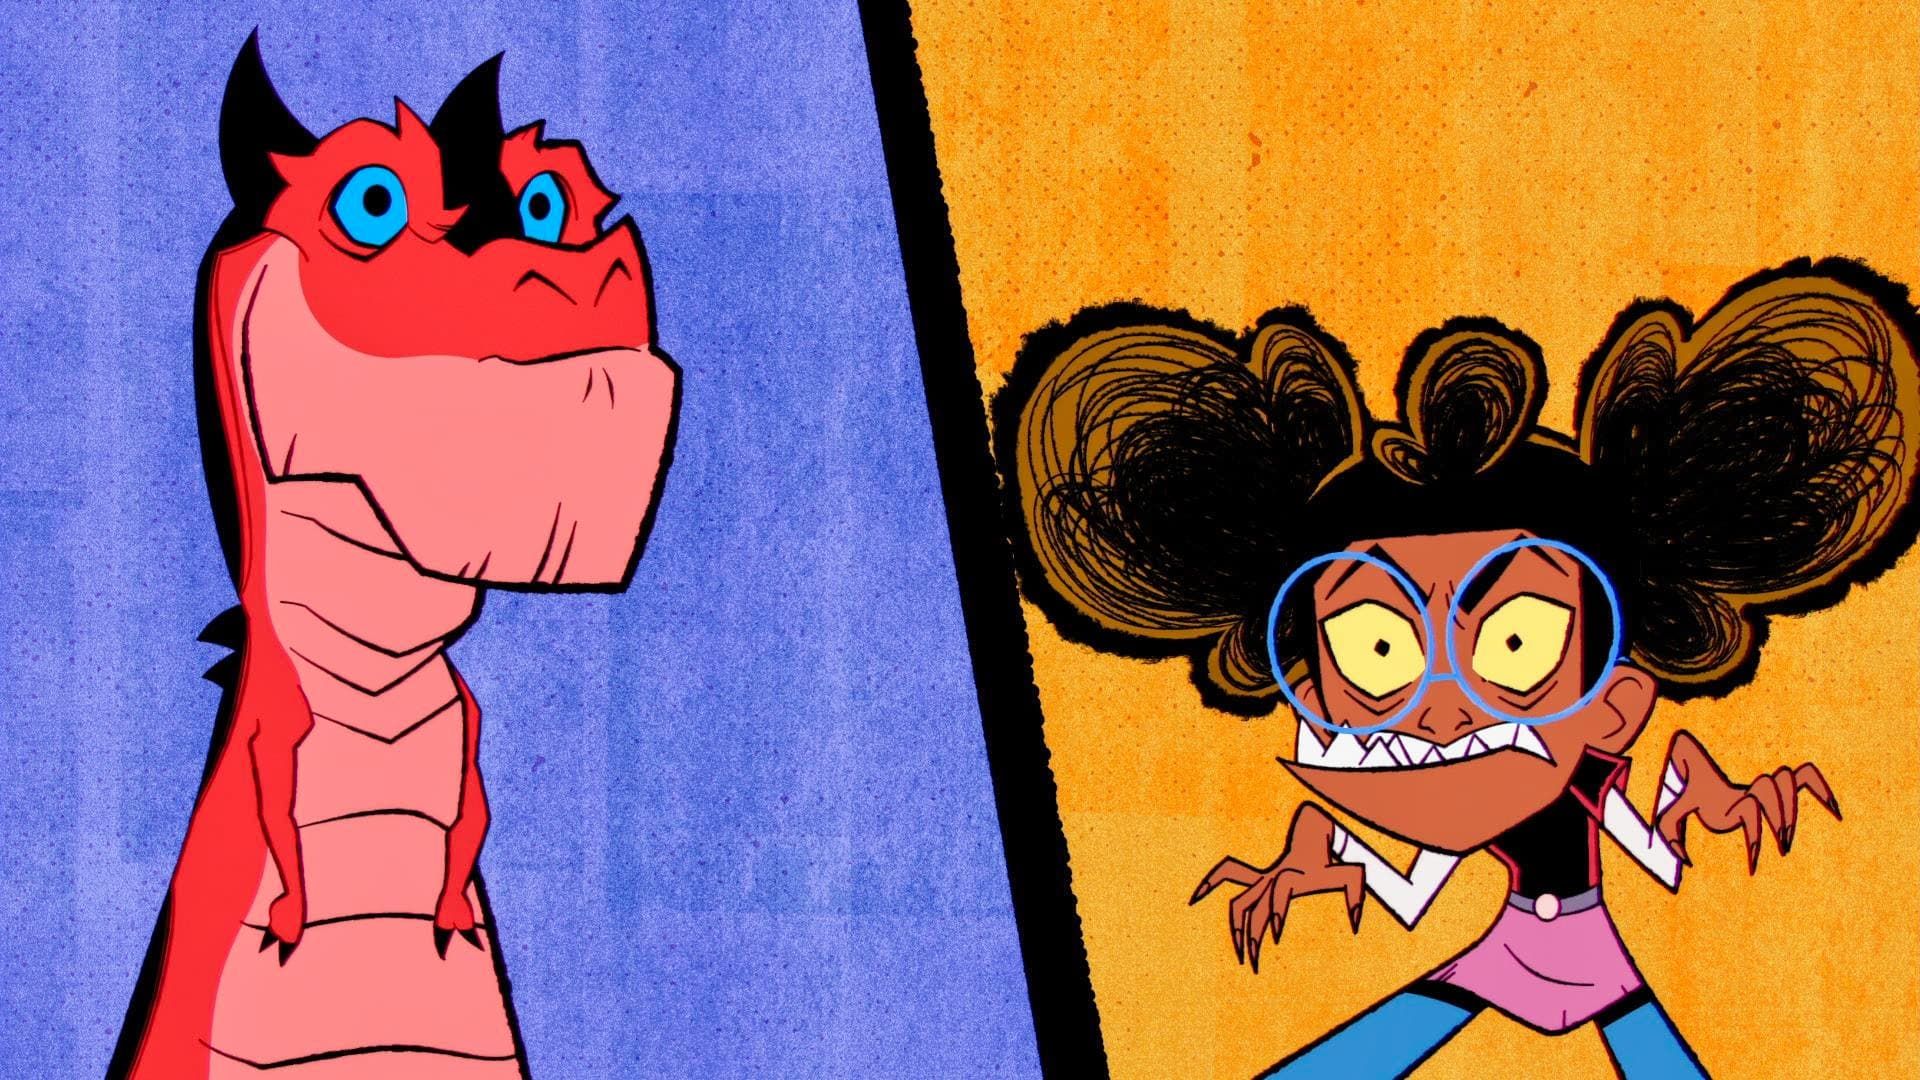 Marvel's Moon Girl and Devil Dinosaur background